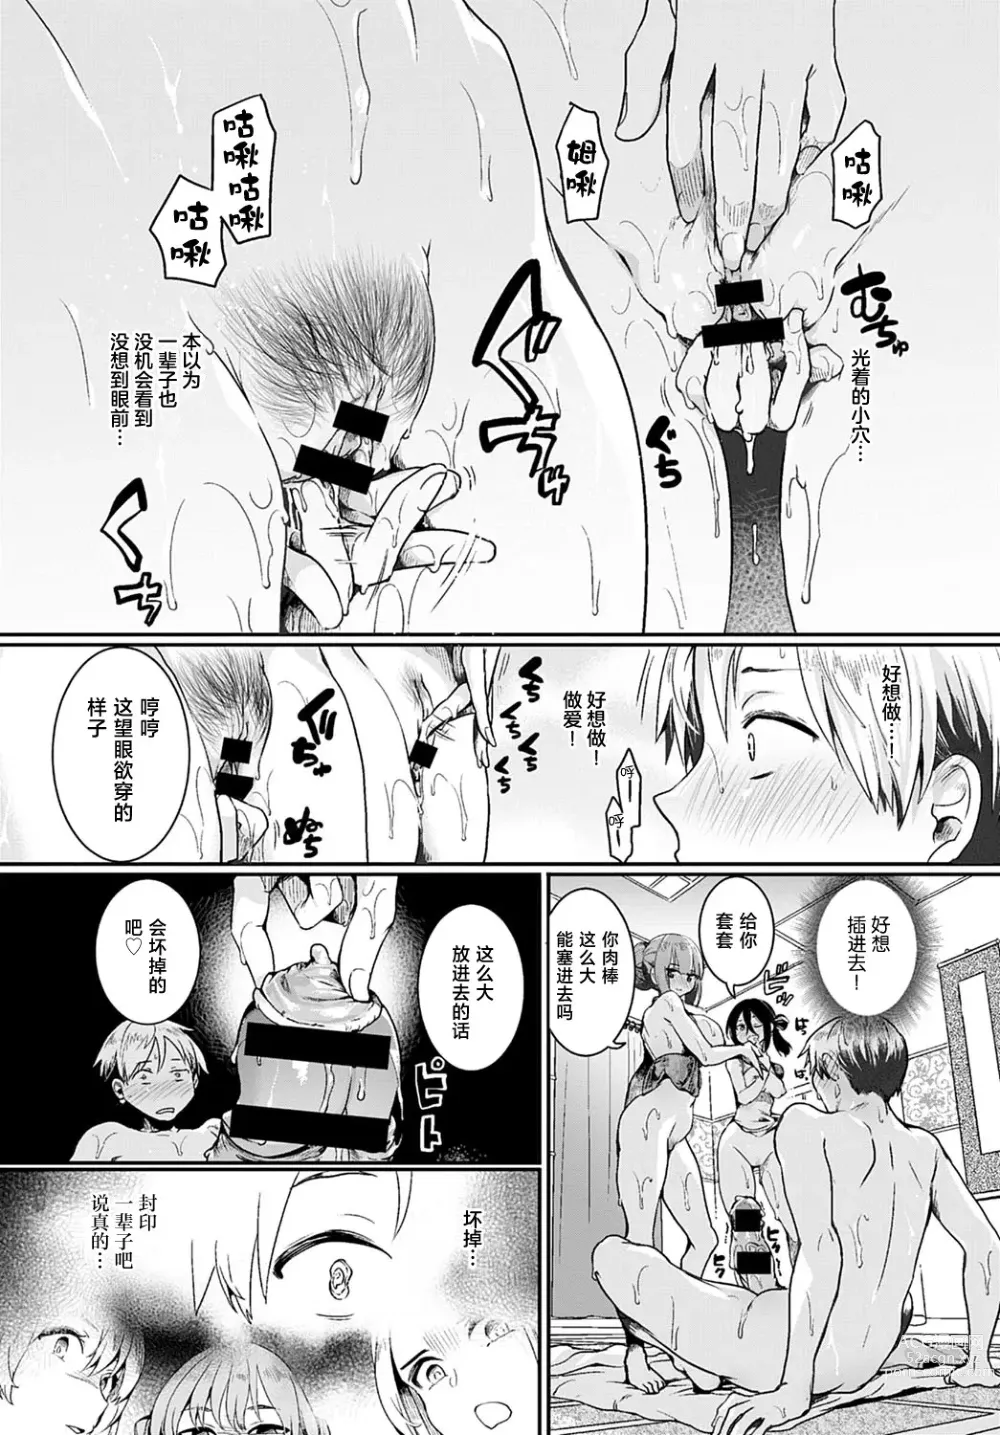 Page 17 of manga 小区里的男士美容店